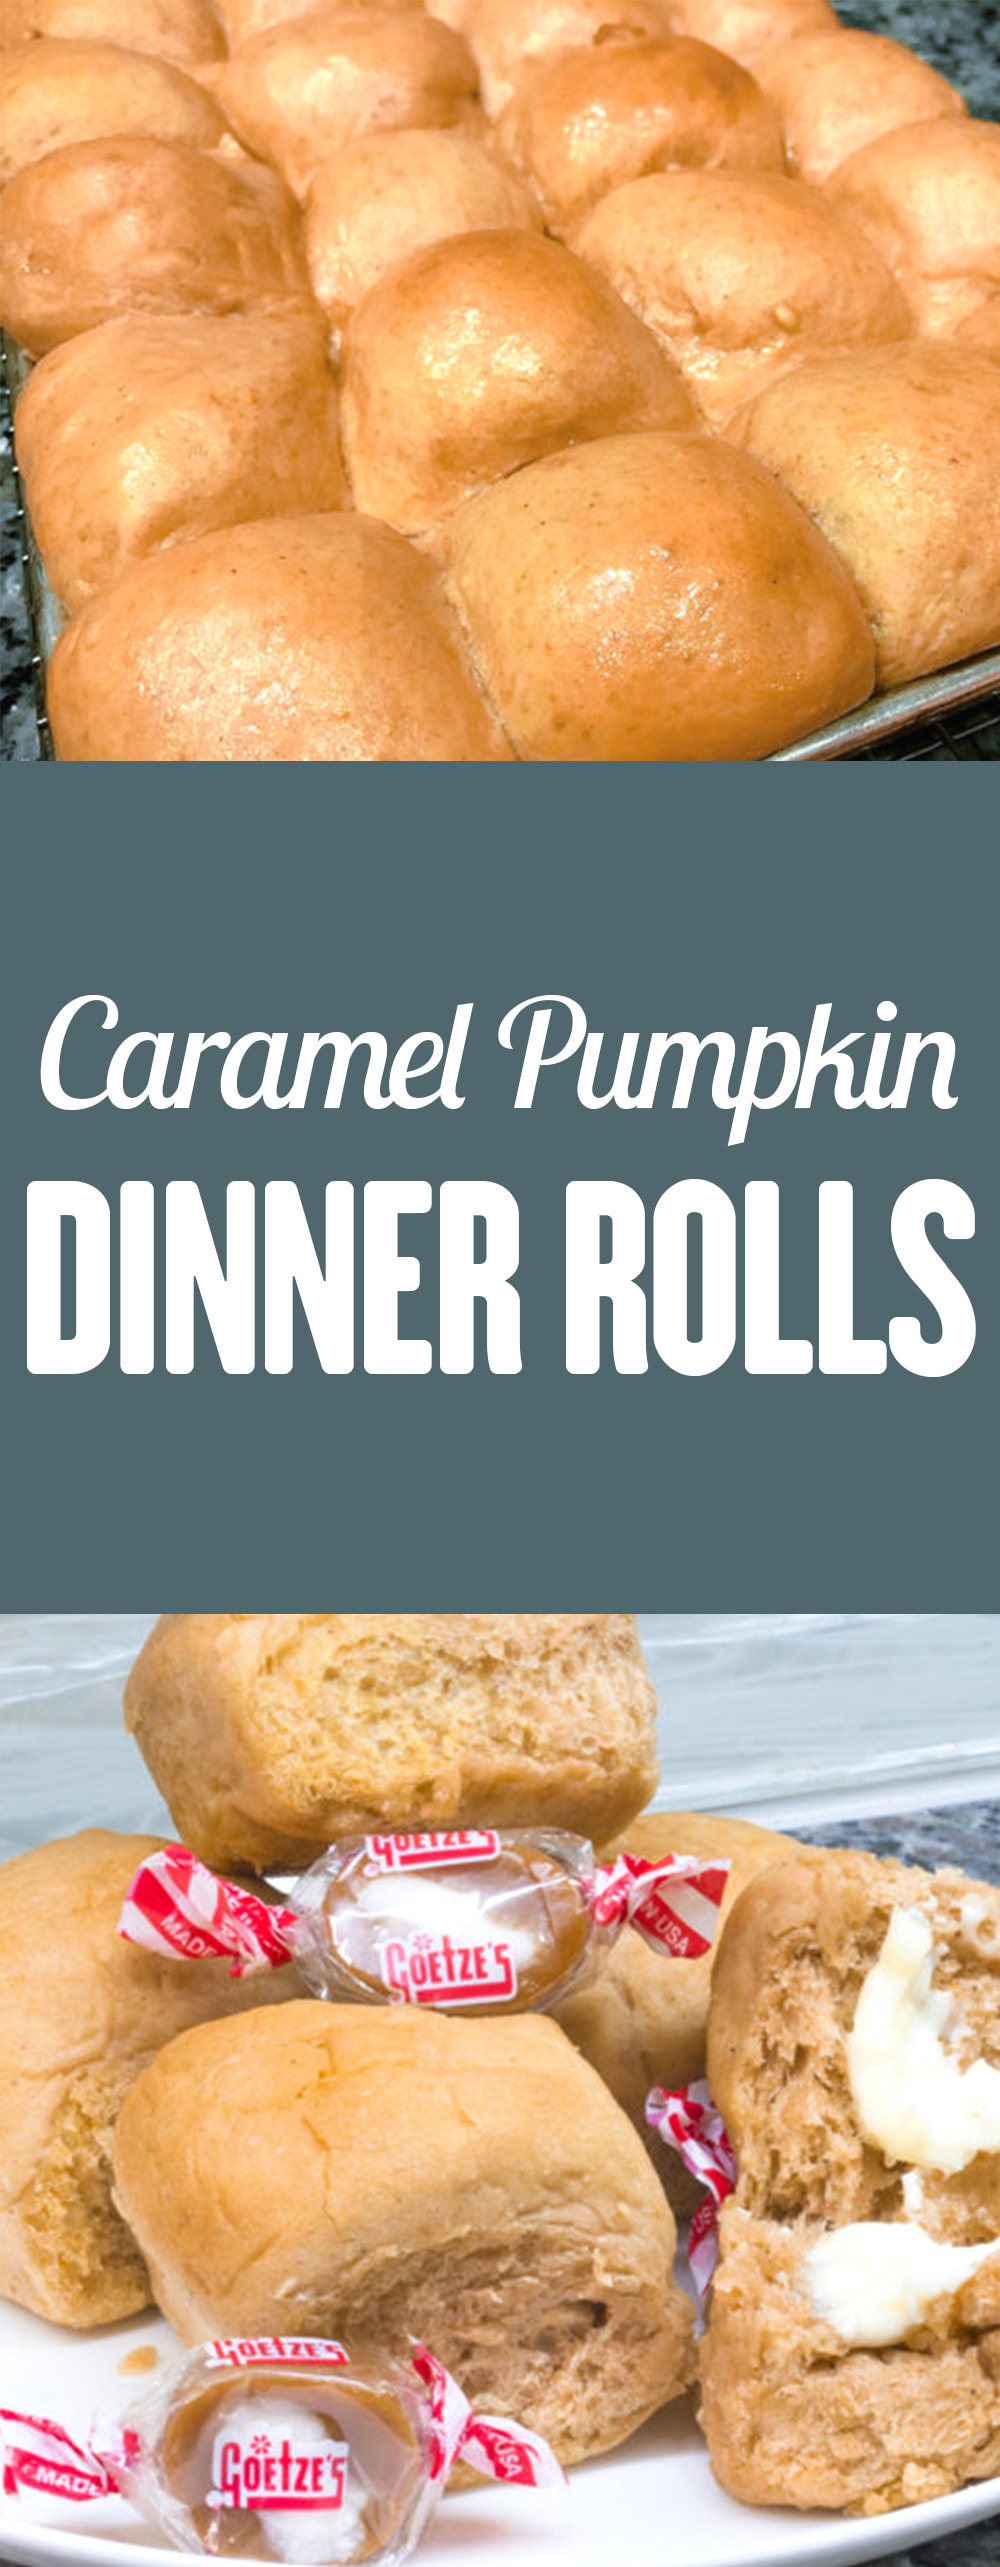 caramel-pumpkin-dinner-rolls3